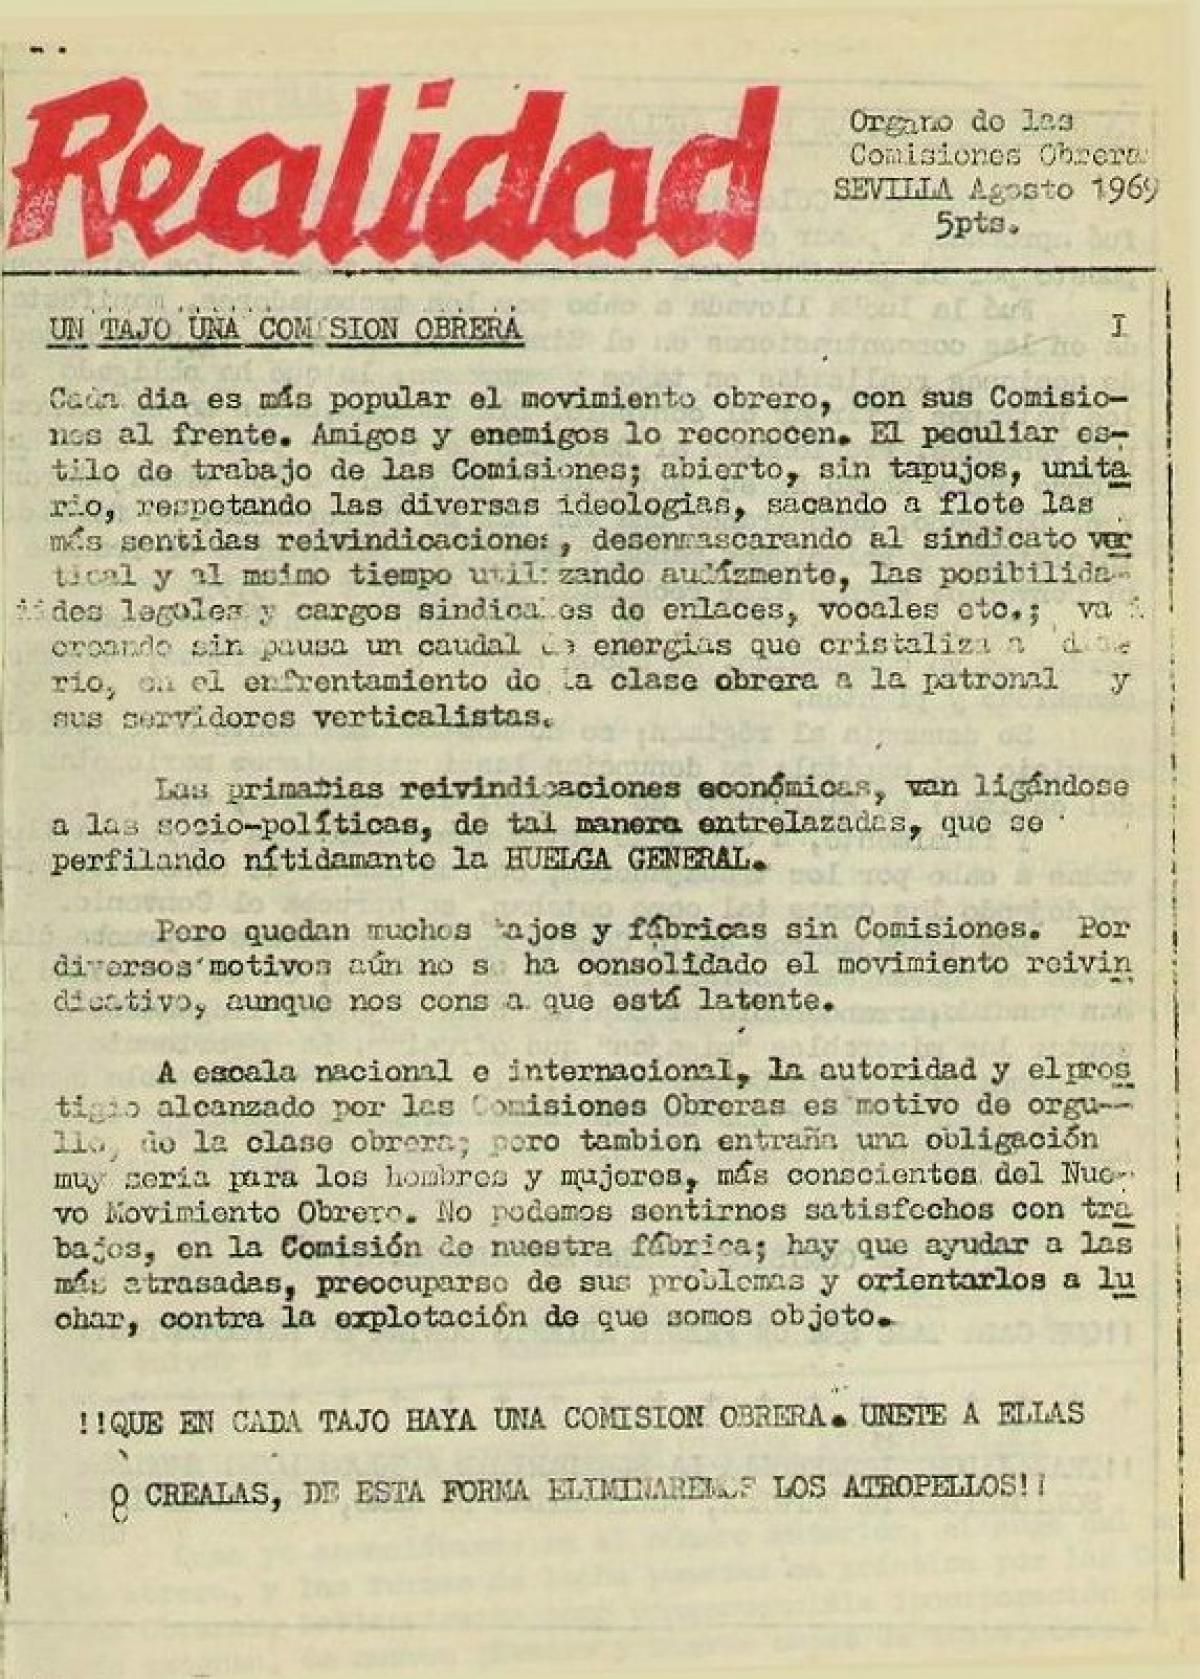 Portada del nmero 1 del peridico clandestino "Realidad: rgano de las Comisiones Obreras de Sevilla", edtido en julio de 1969. Archivo Histrico de CCOO de Andaluca.